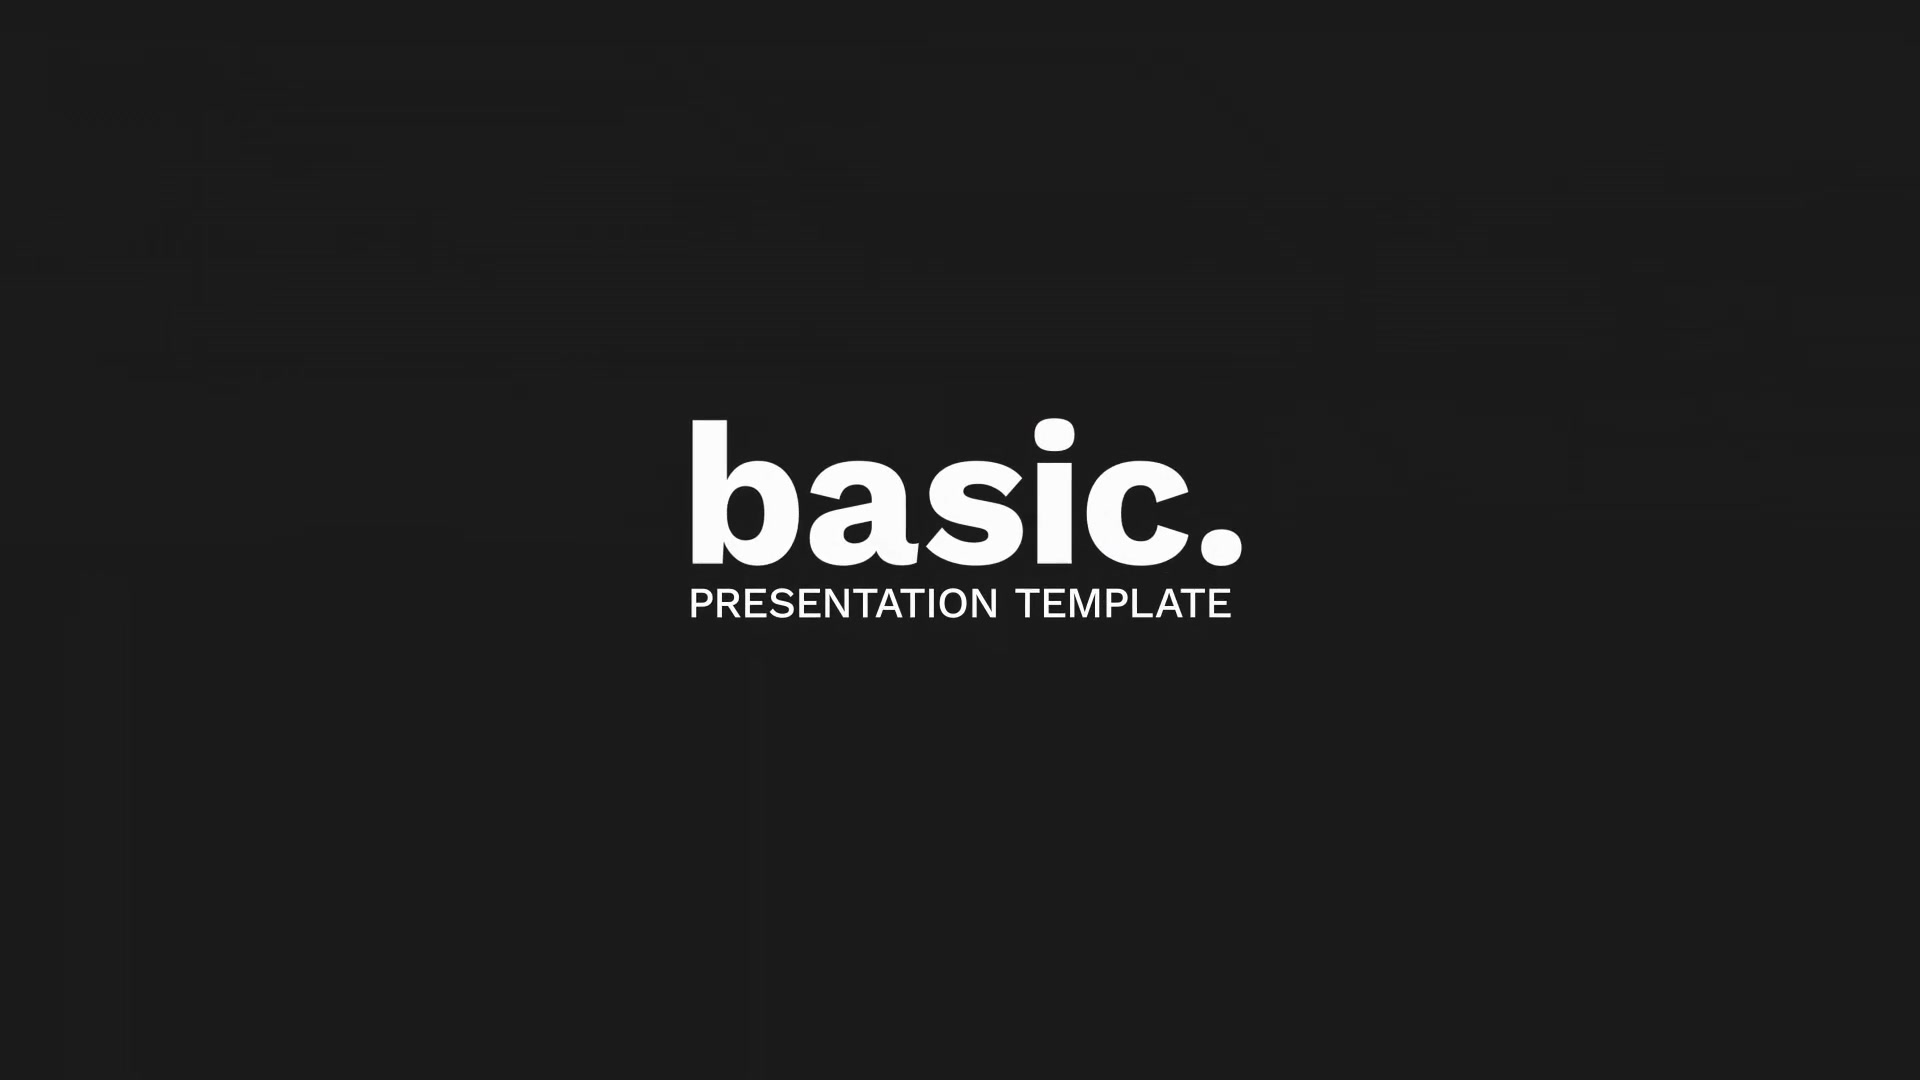 Basic. Minimal Corporate Presentation For Premiere Pro Videohive 34260980 Premiere Pro Image 12